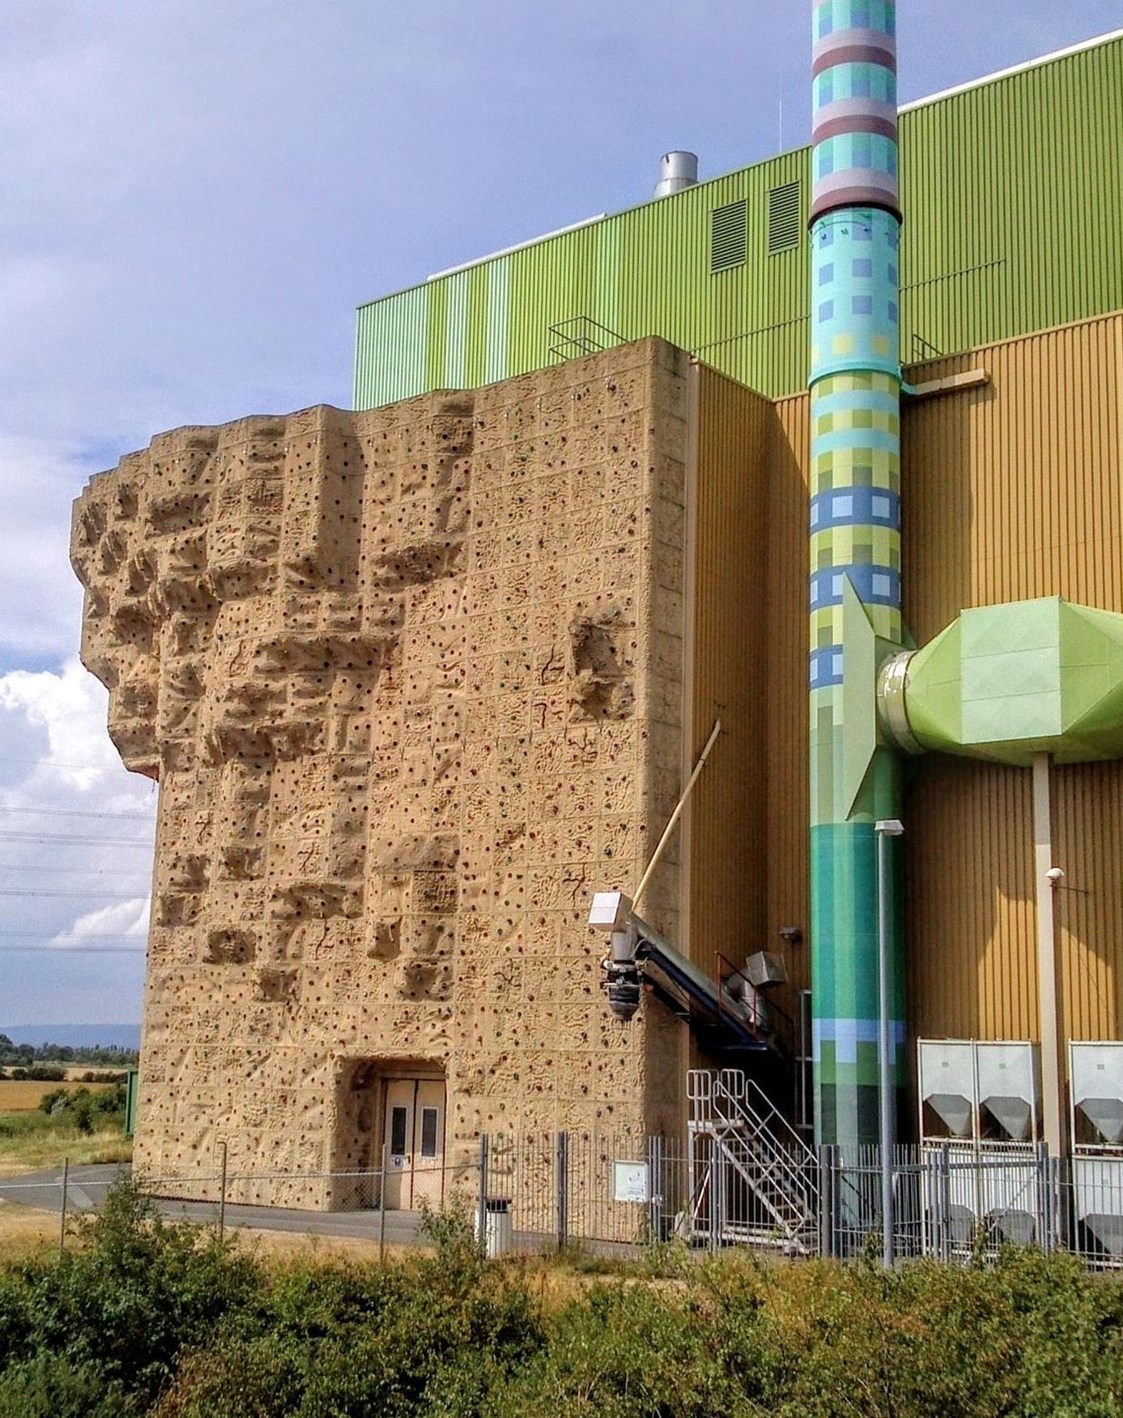 Kletterhalle: Outdoor-Kletterwand am Biomassekraftwerk Wicker - Kletterwand am Biomassekraftwerk Wicker